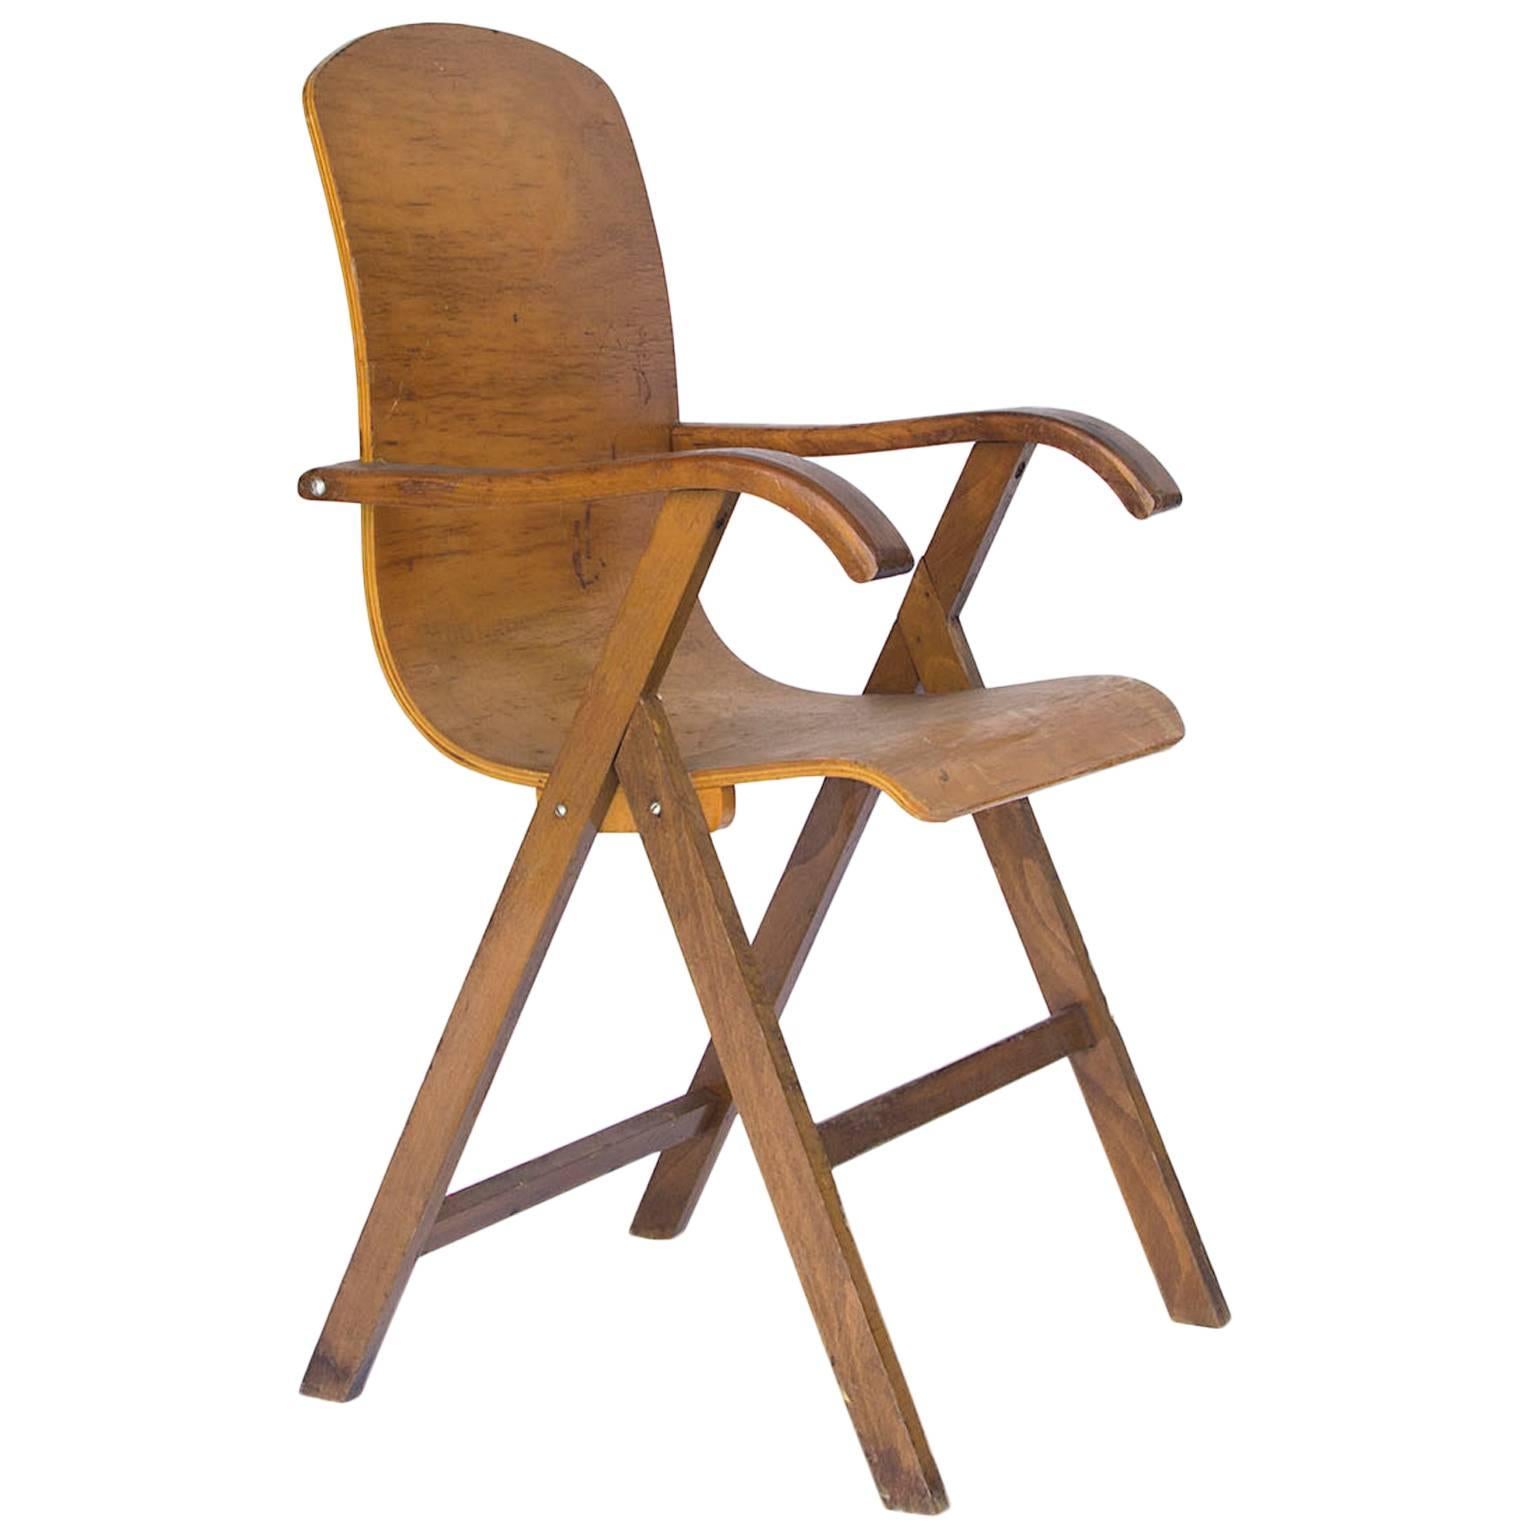 Circa 1950, European Plywood Chair 